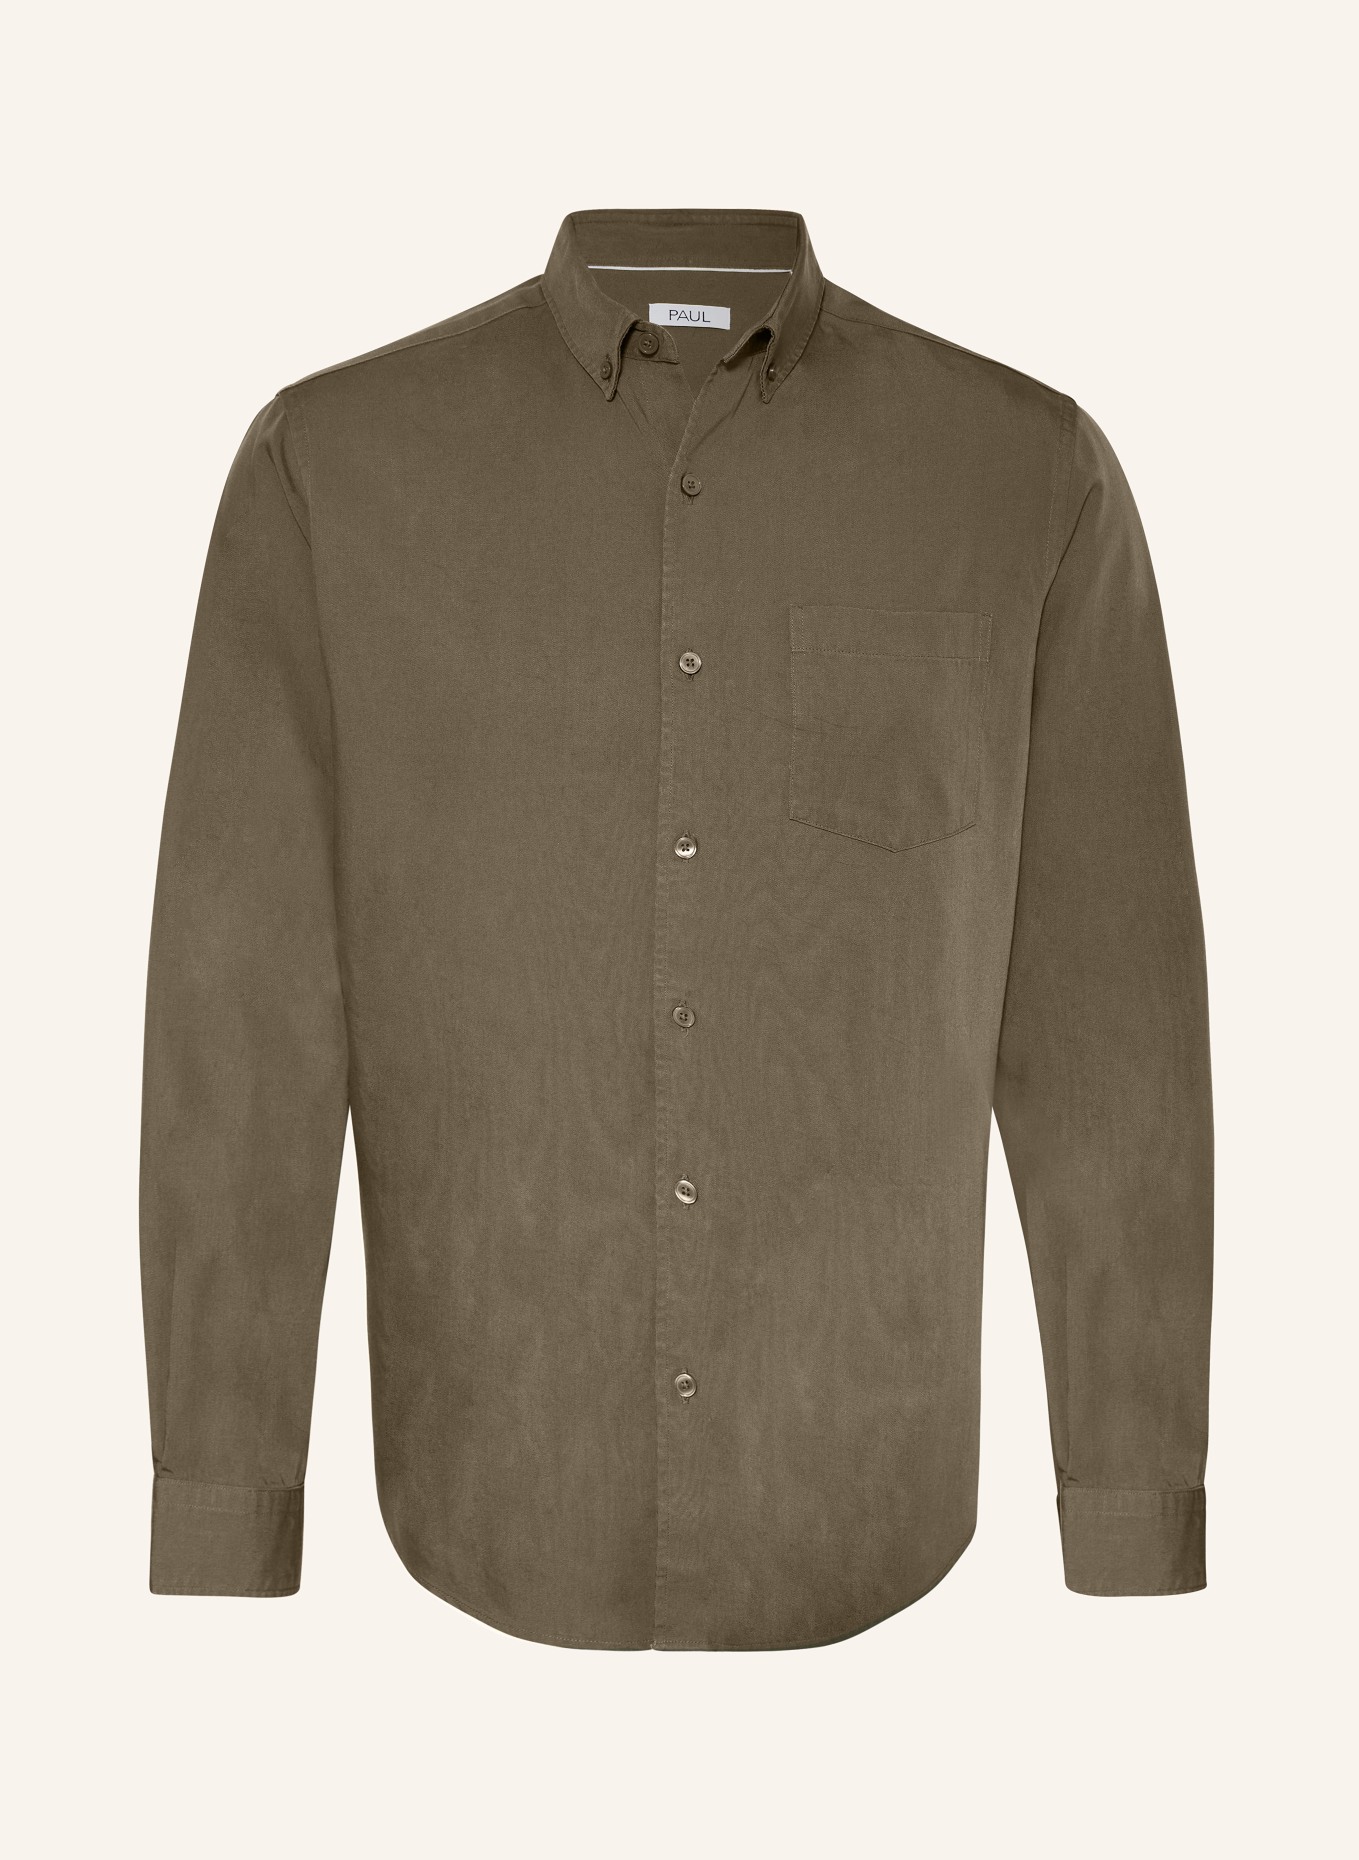 PAUL Shirt regular fit, Color: OLIVE (Image 1)